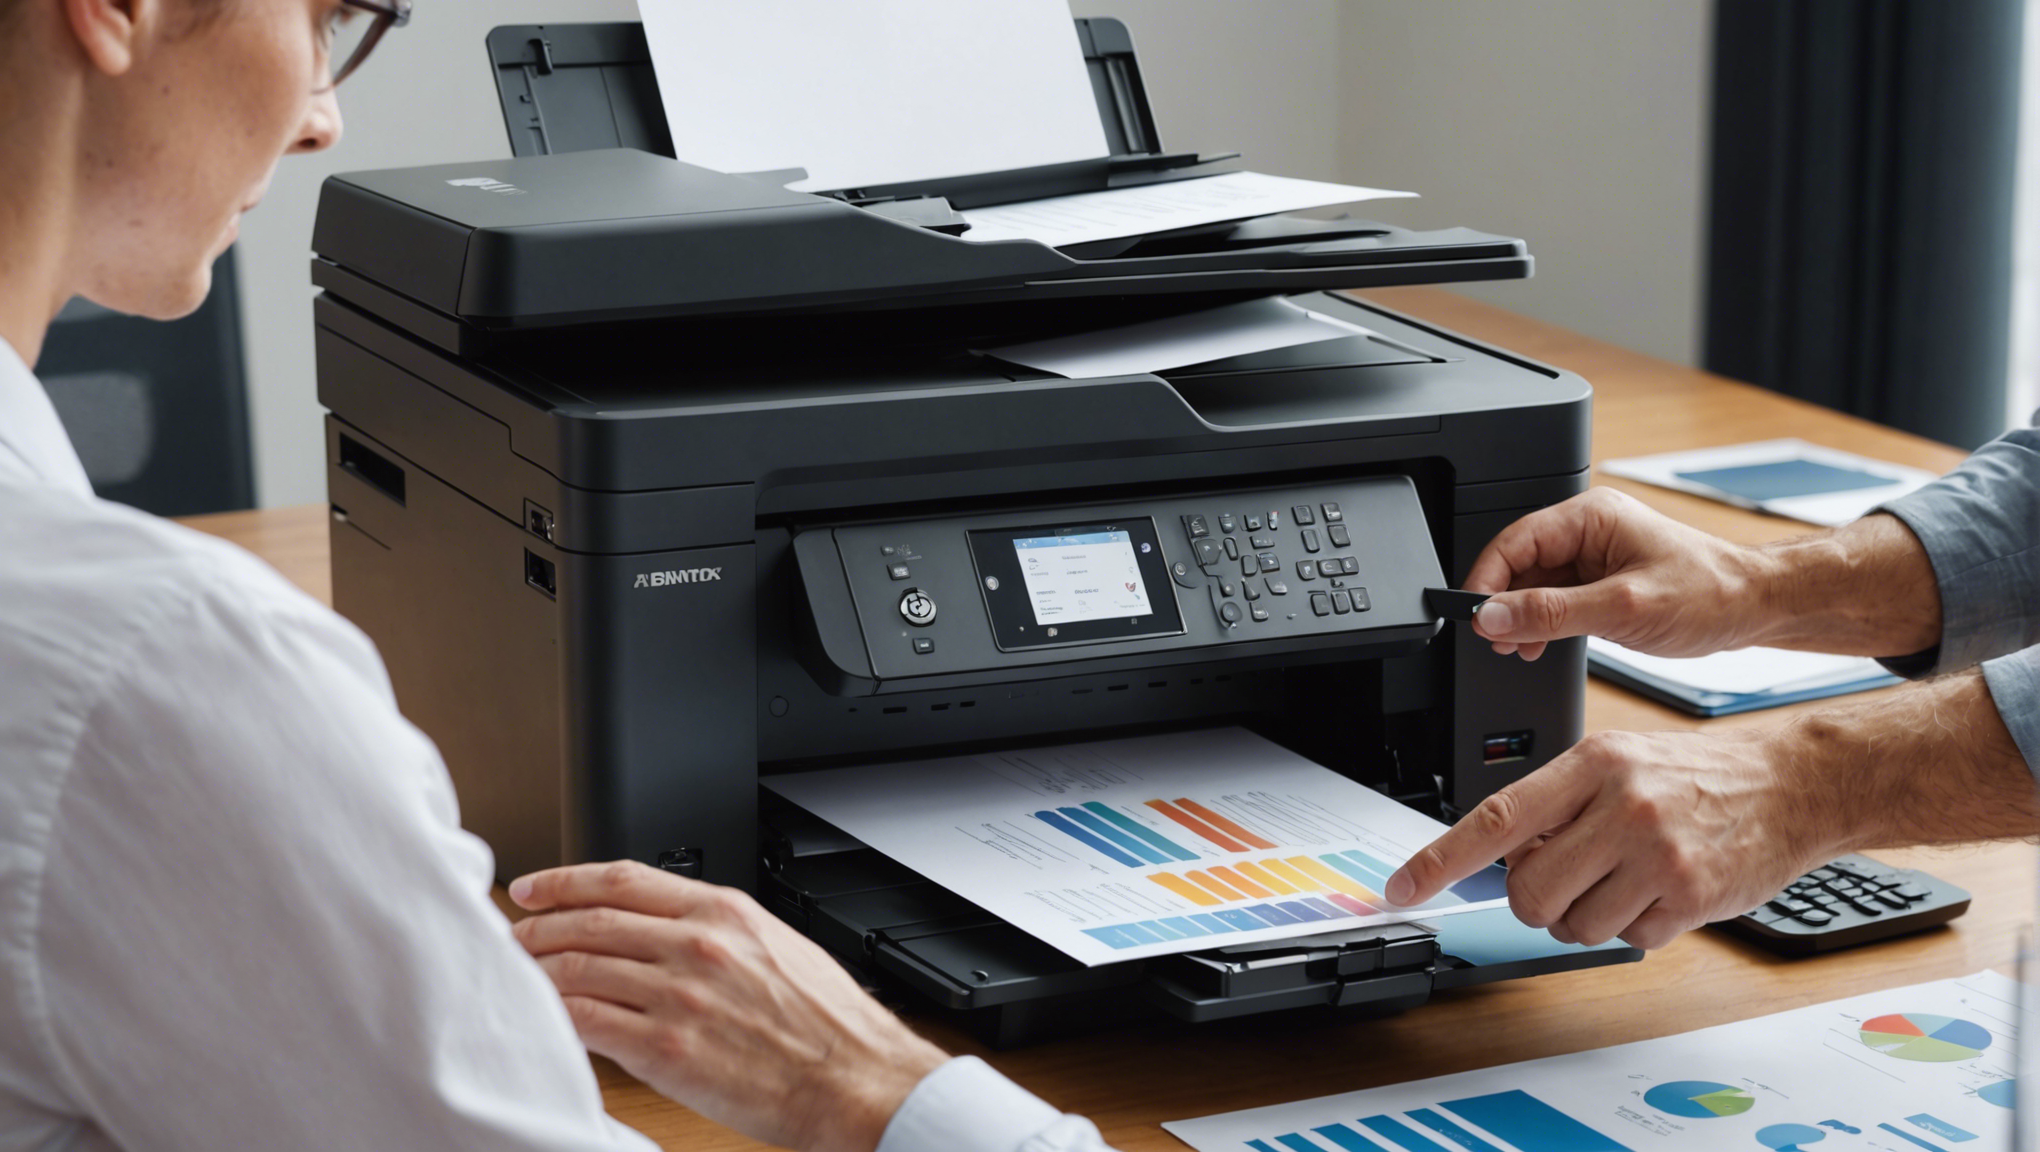 découvrez nos astuces pour choisir une imprimante professionnelle à prix abordable et de qualité. nos conseils pour trouver une imprimante professionnelle abordable adaptée à vos besoins. optez pour une imprimante professionnelle au meilleur rapport qualité-prix.